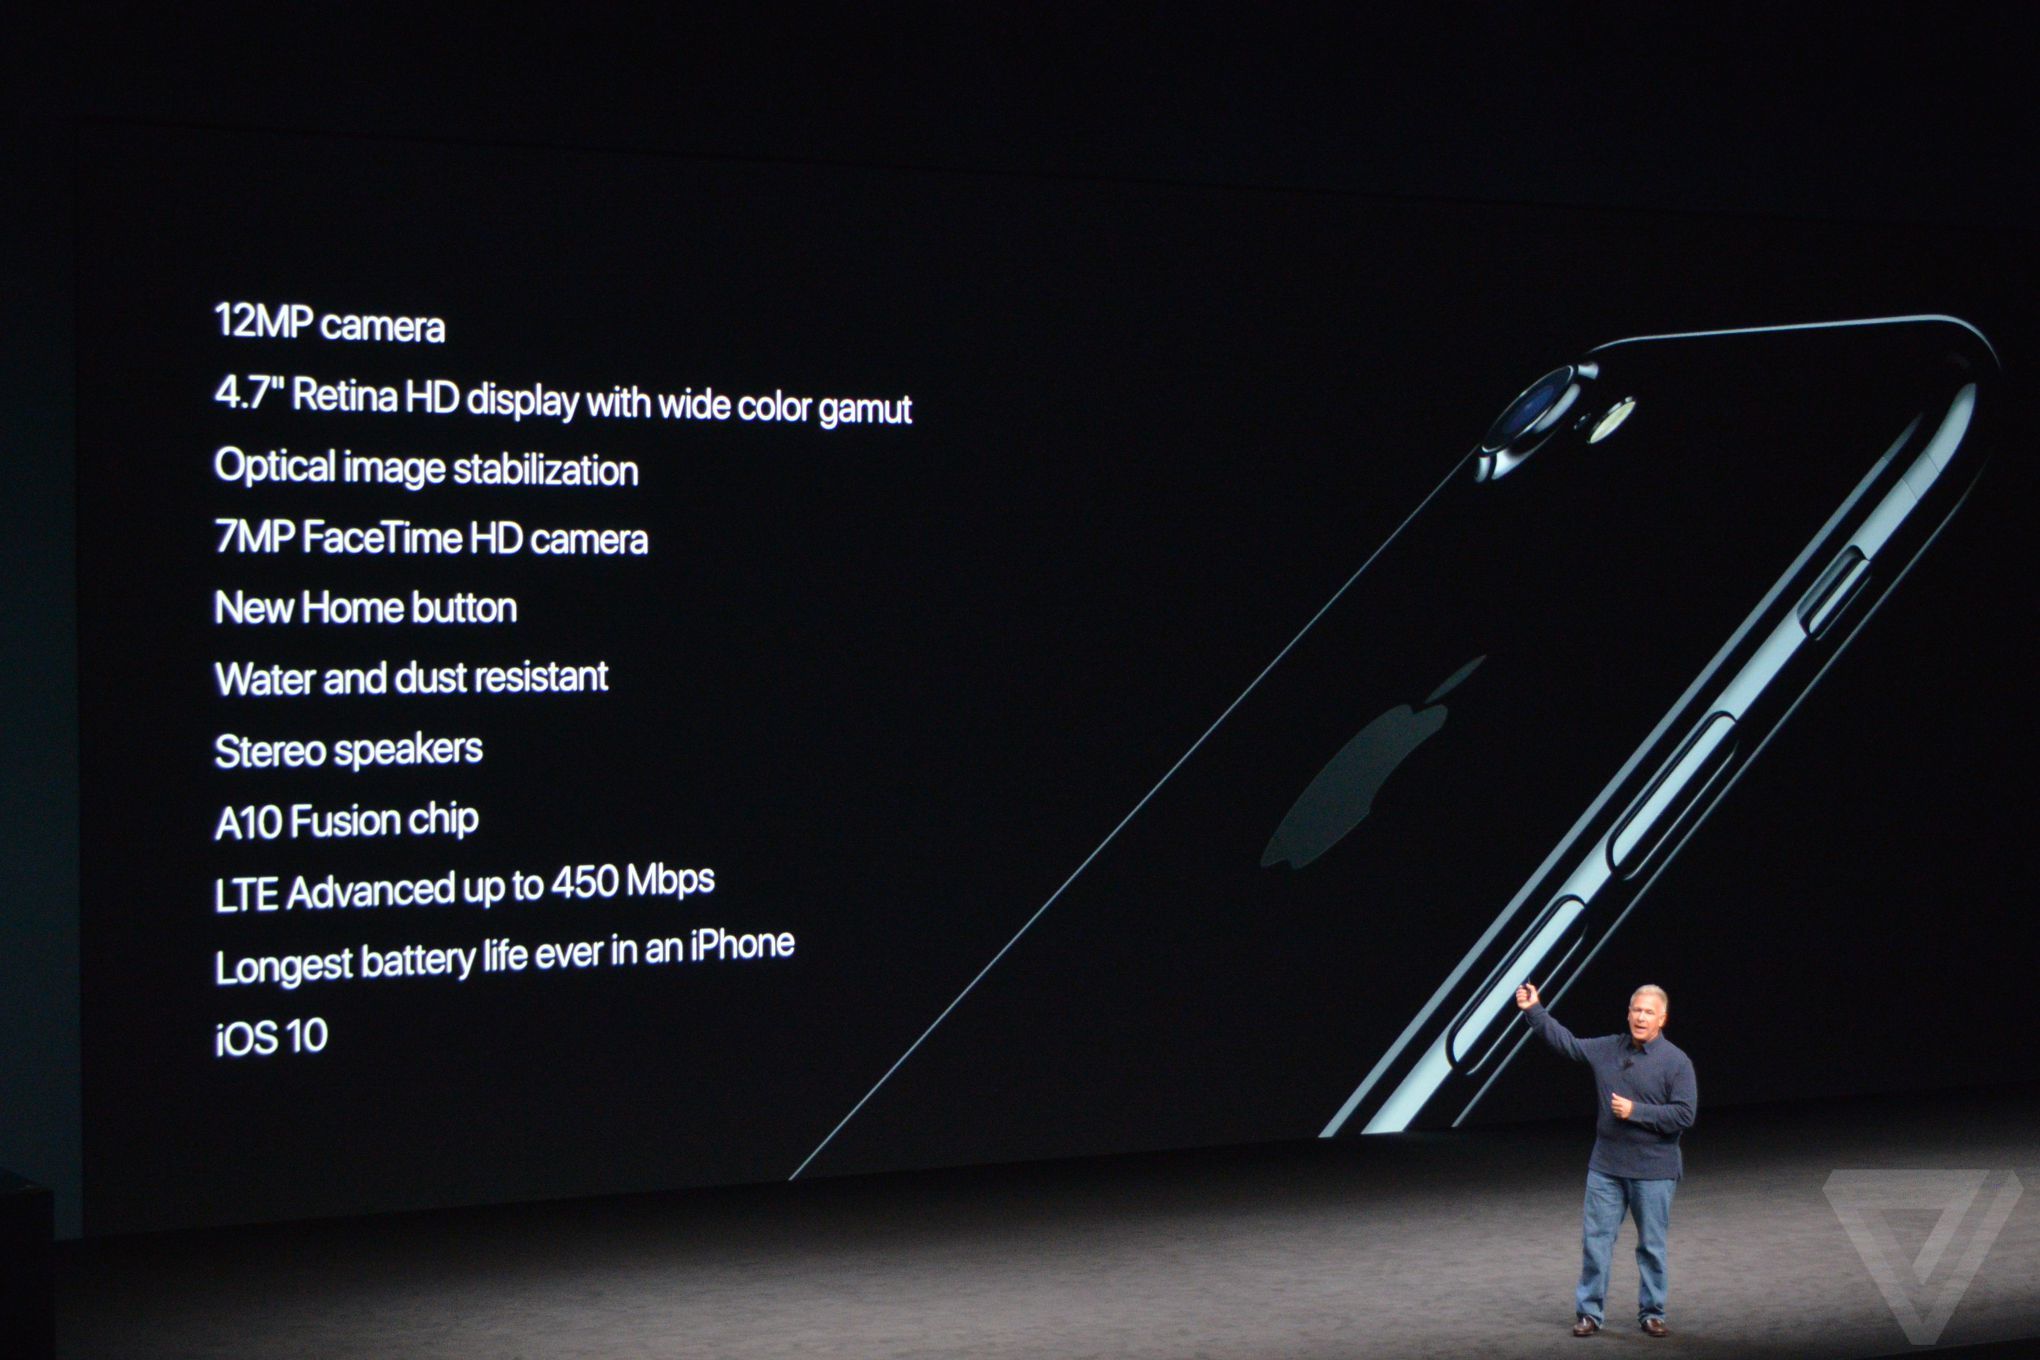 
10 tính năng mới của iPhone 7.
